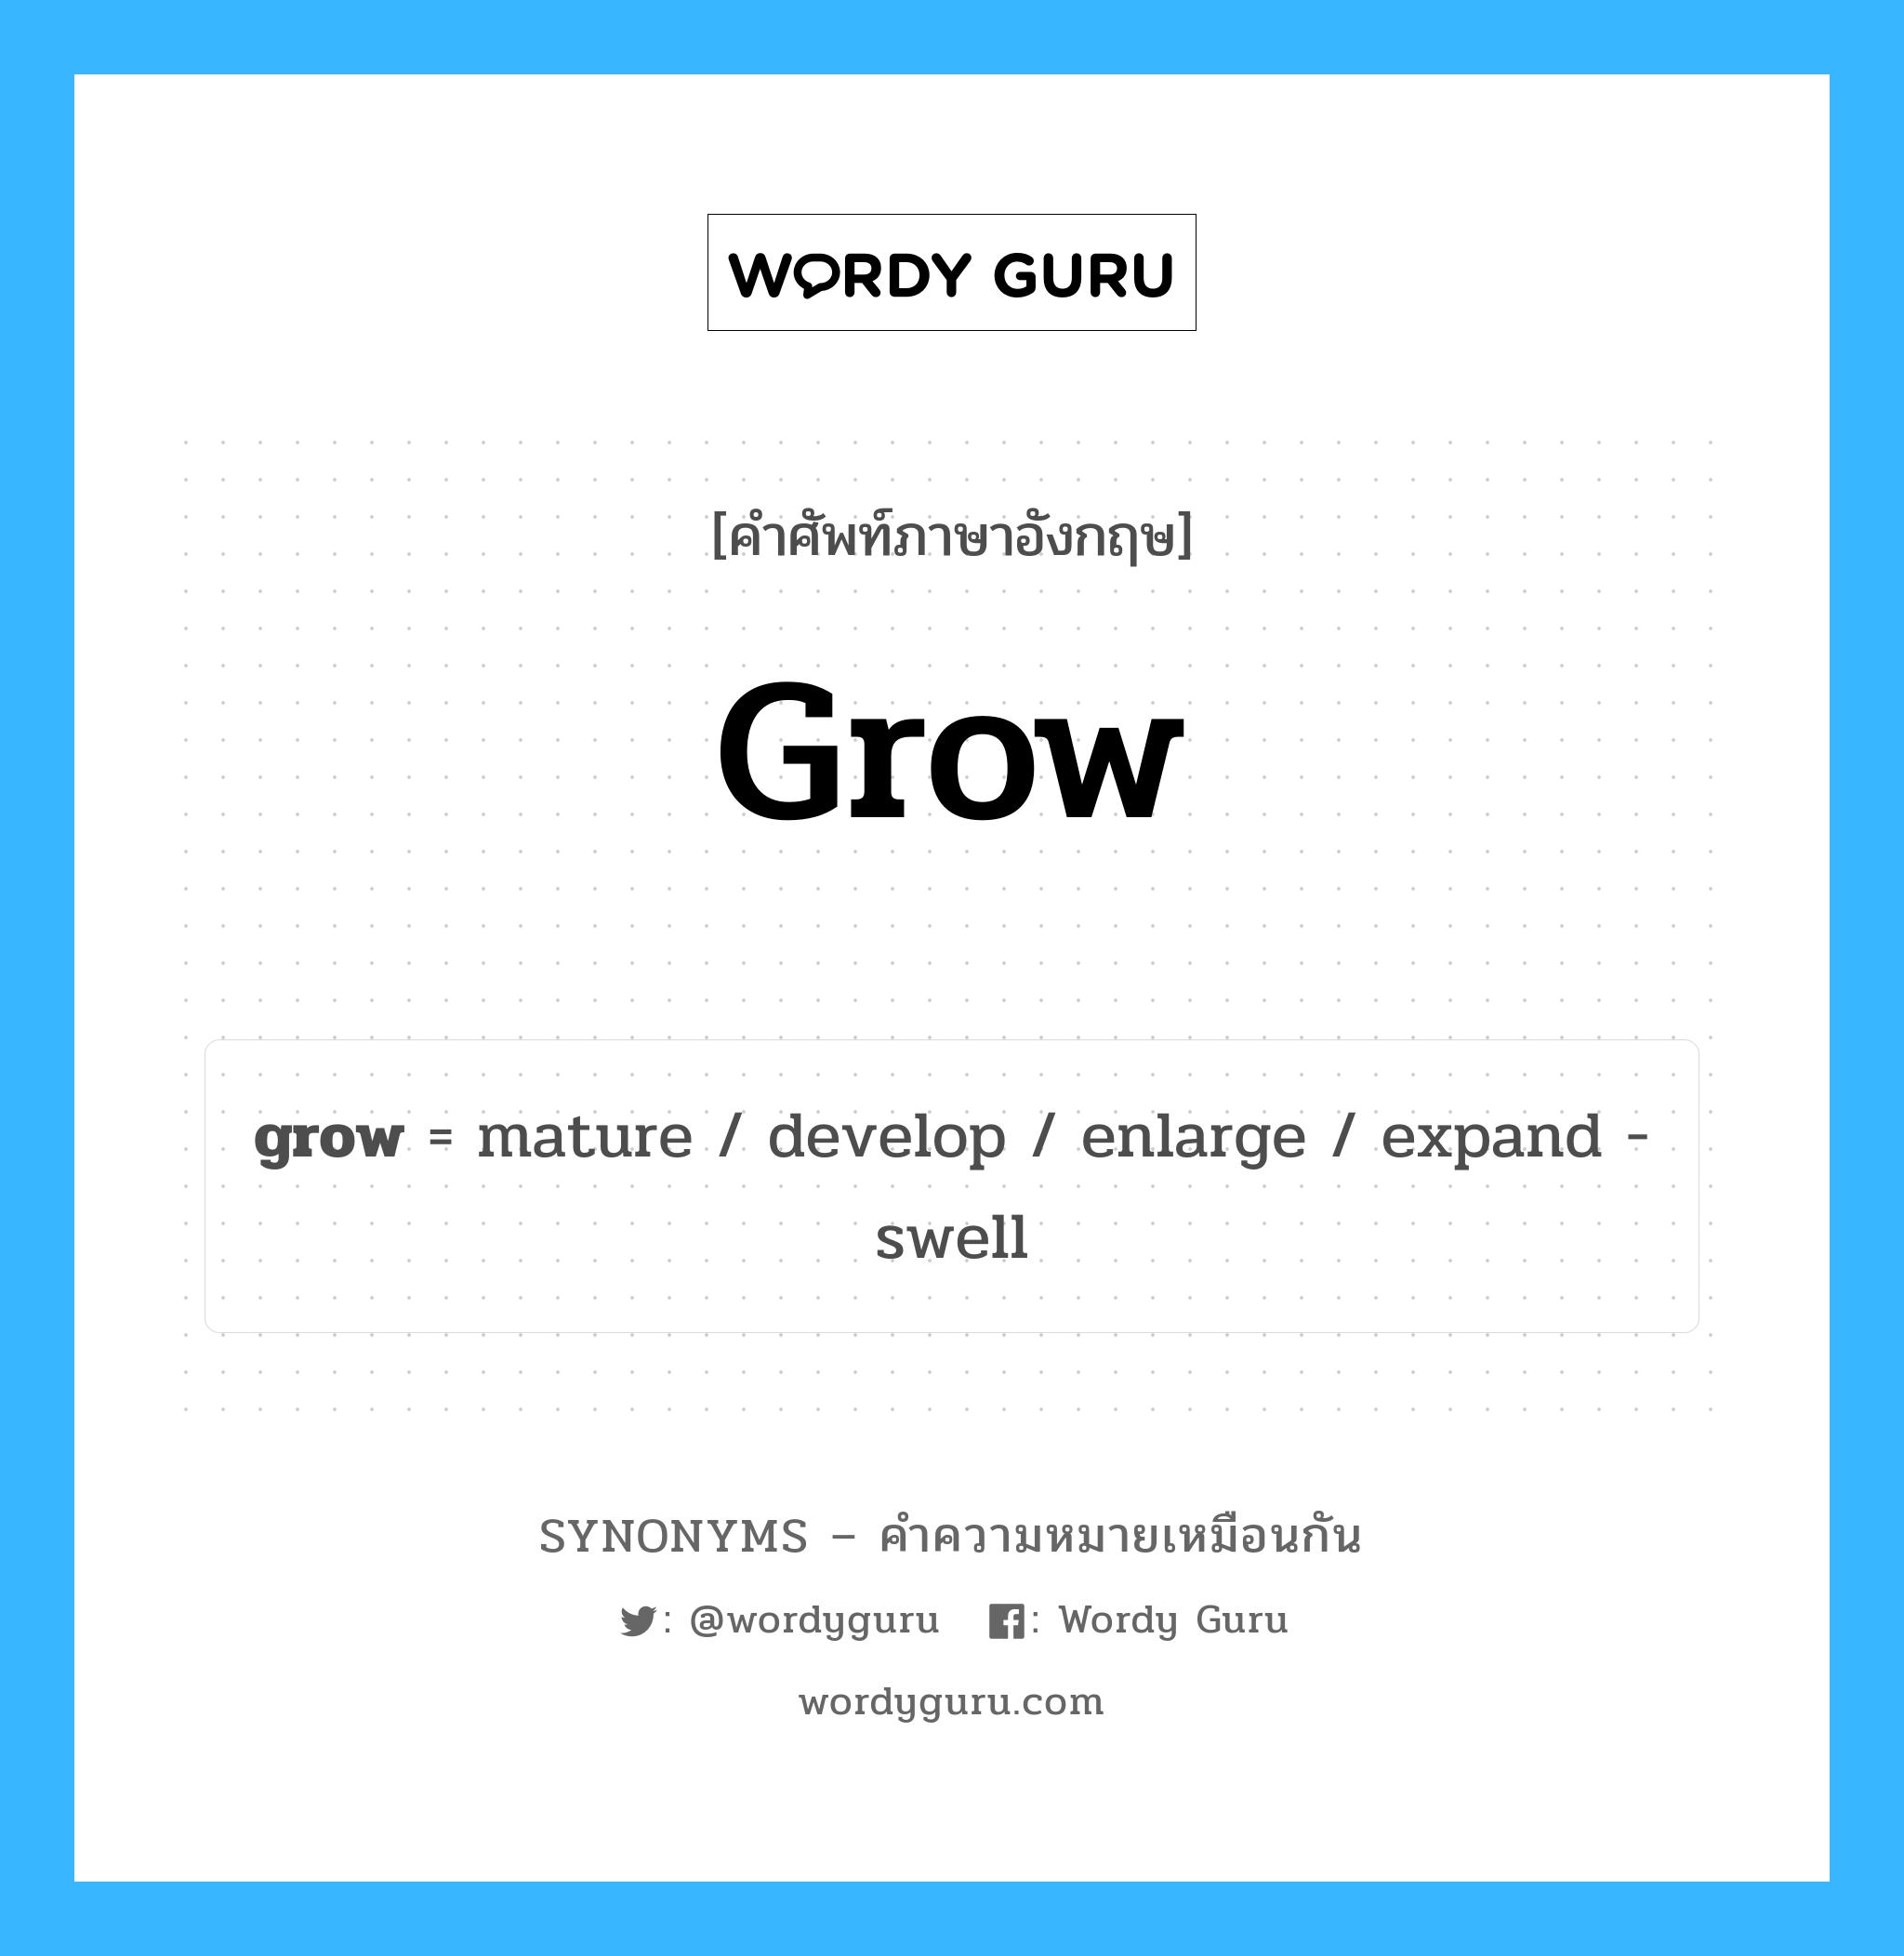 develop เป็นหนึ่งใน grow และมีคำอื่น ๆ อีกดังนี้, คำศัพท์ภาษาอังกฤษ develop ความหมายคล้ายกันกับ grow แปลว่า พัฒนา หมวด grow